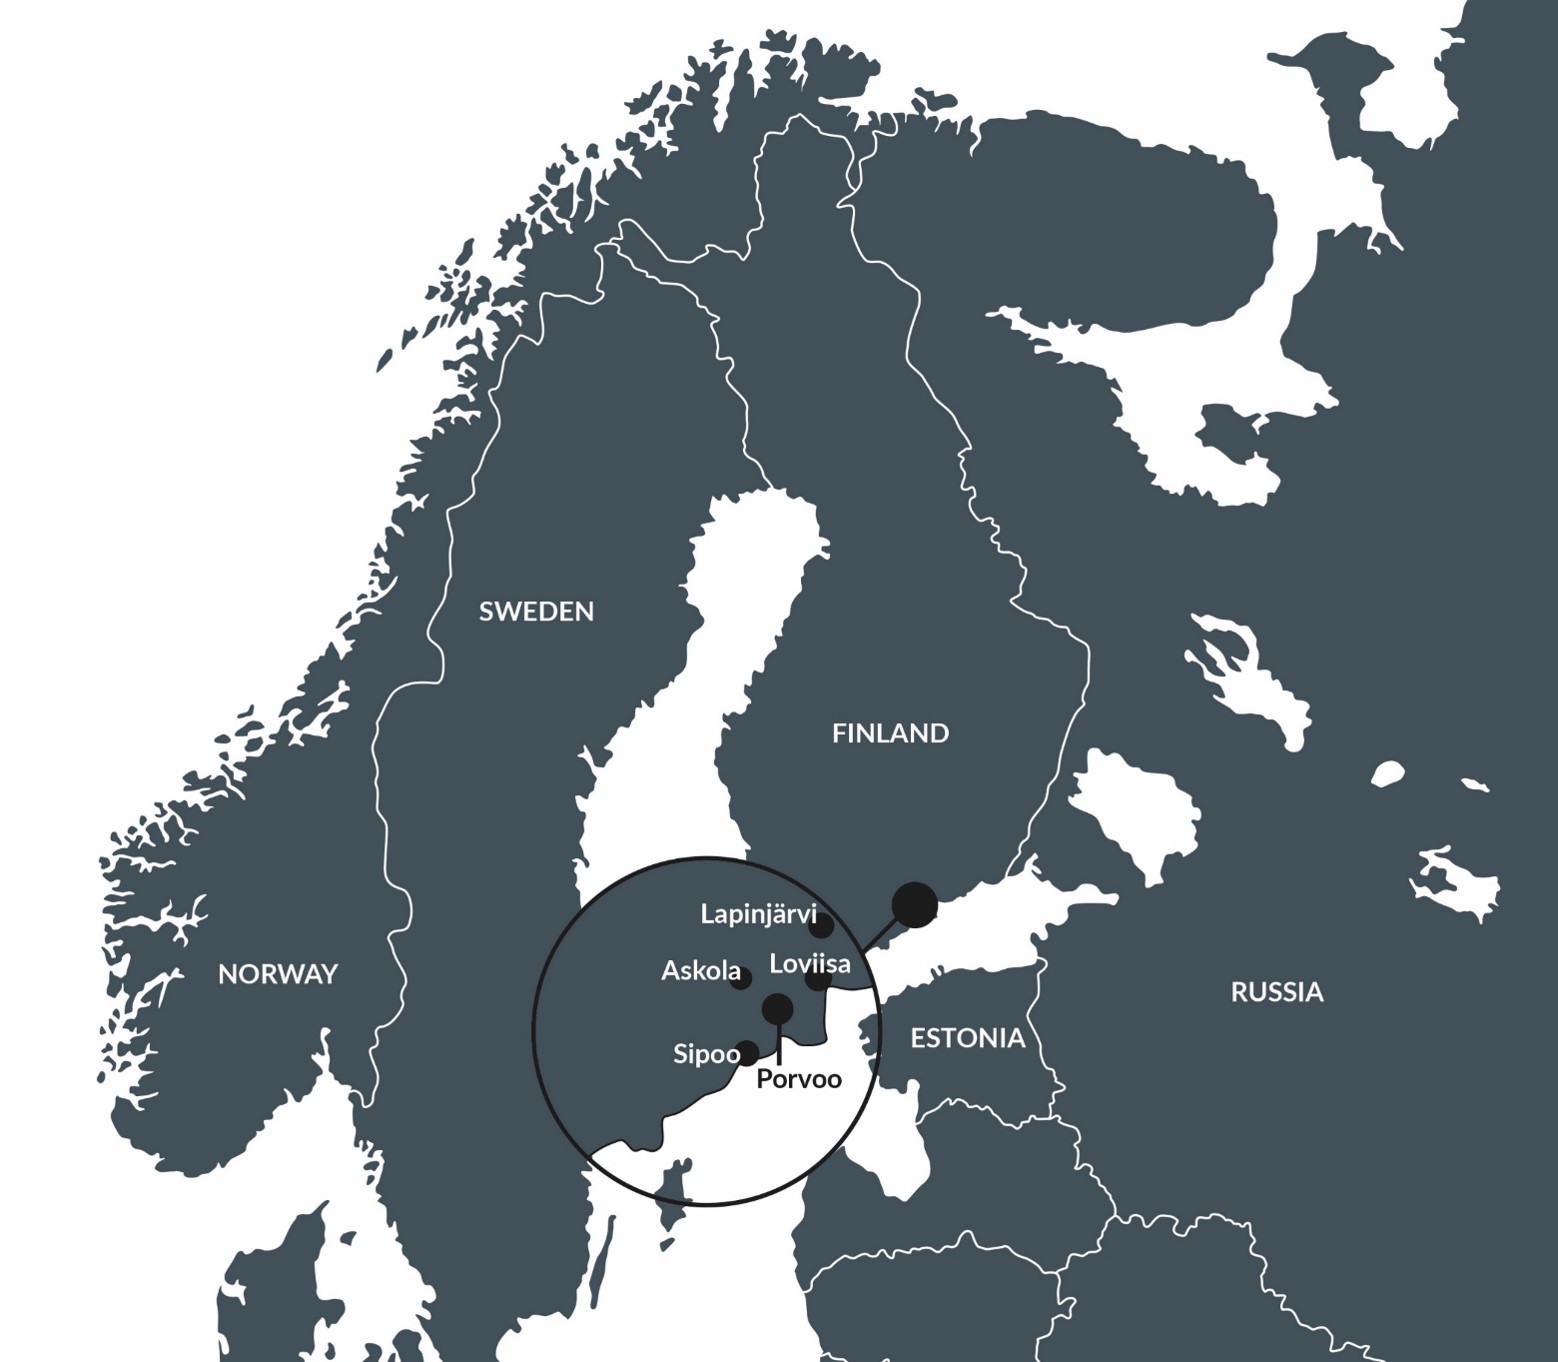 Porvoon omistajakunnat: Laponjärvi, Loviisa, Askola, Sipoo ja Porvoo.